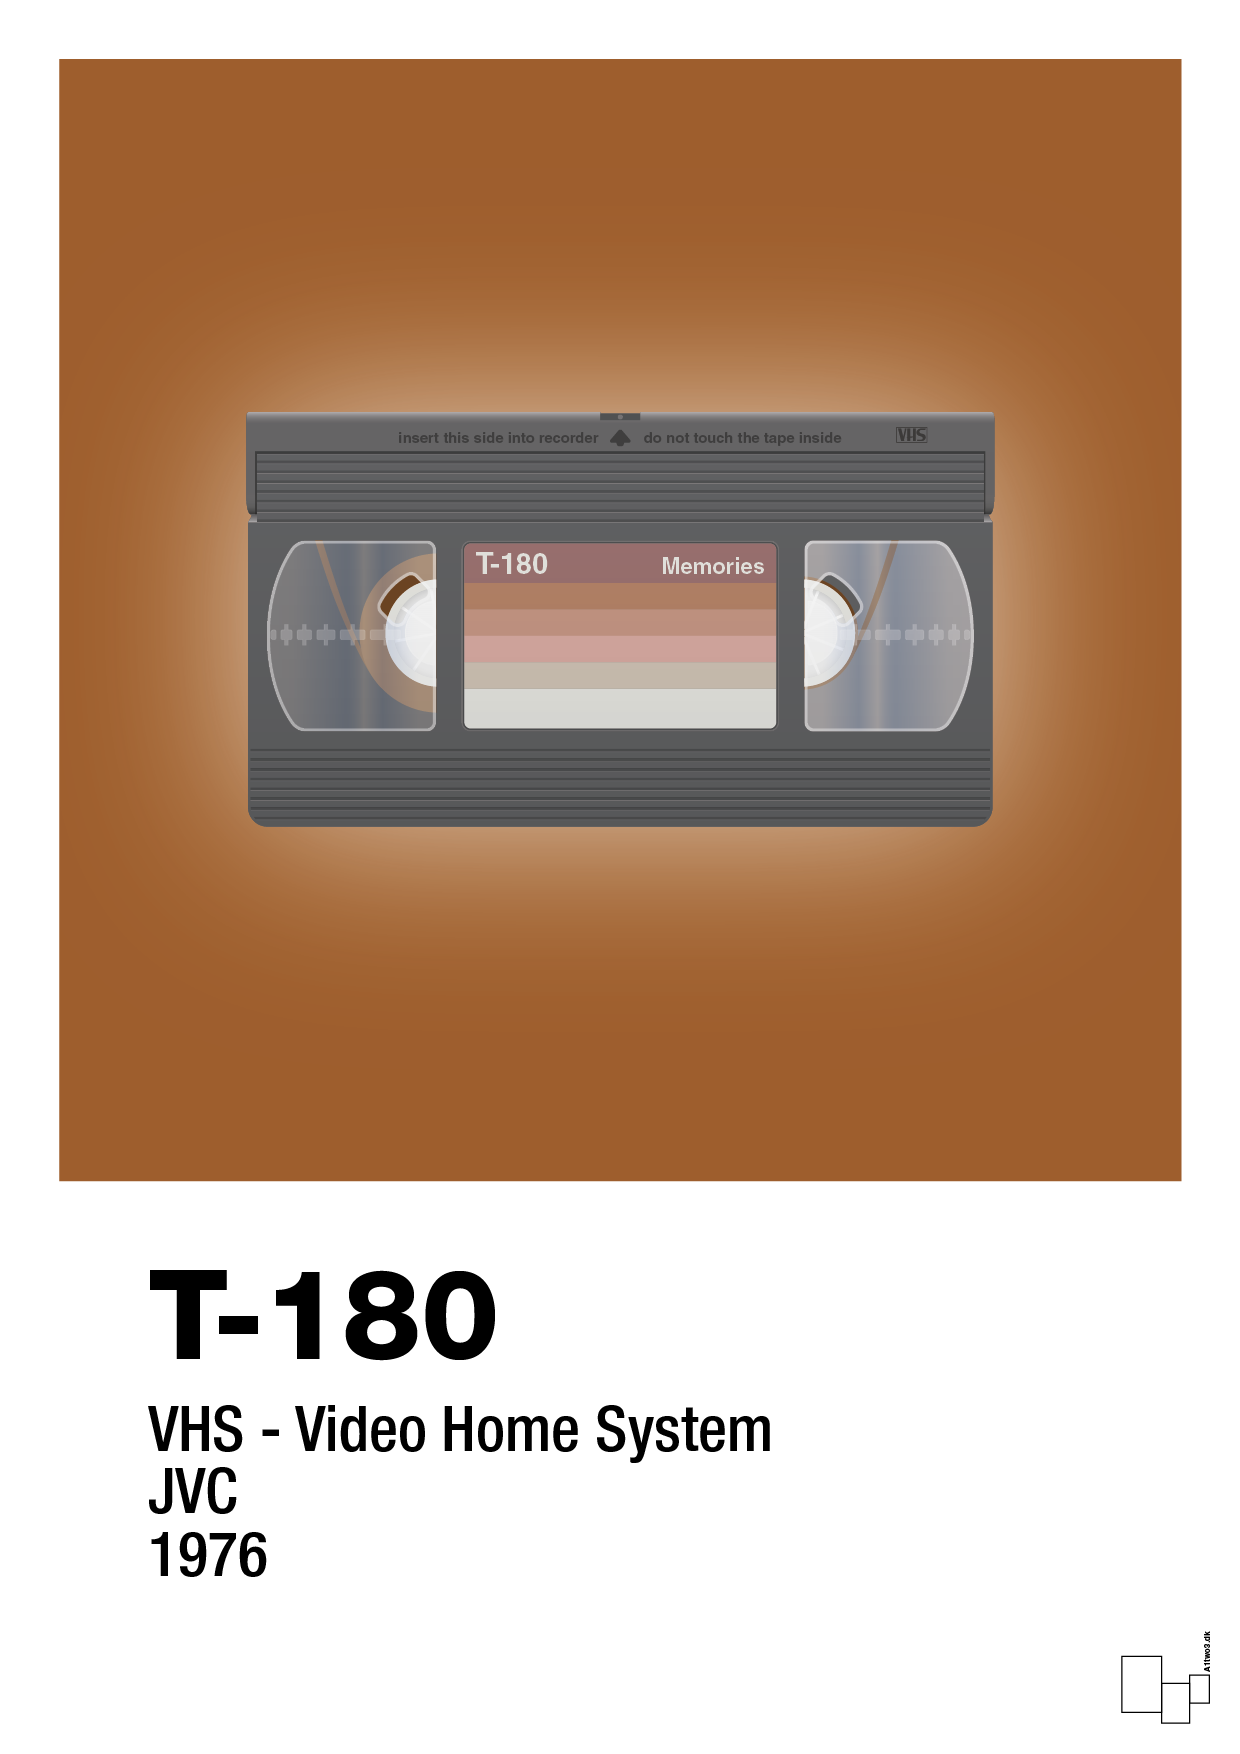 videobånd t-180 - Plakat med Grafik i Cognac